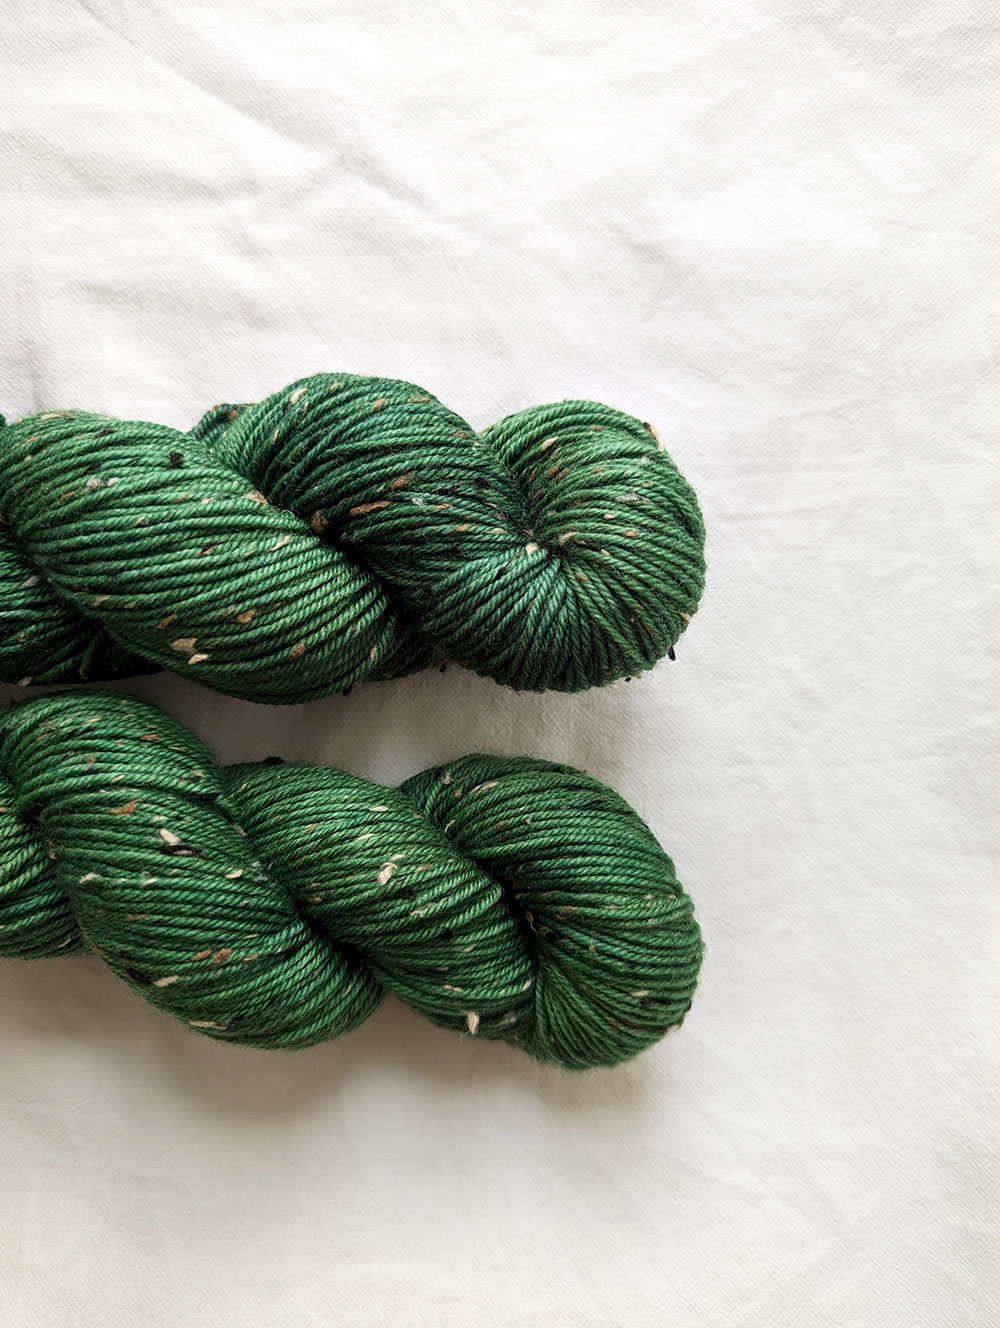 Knitcraft Fern Green Everyday DK Yarn 50g